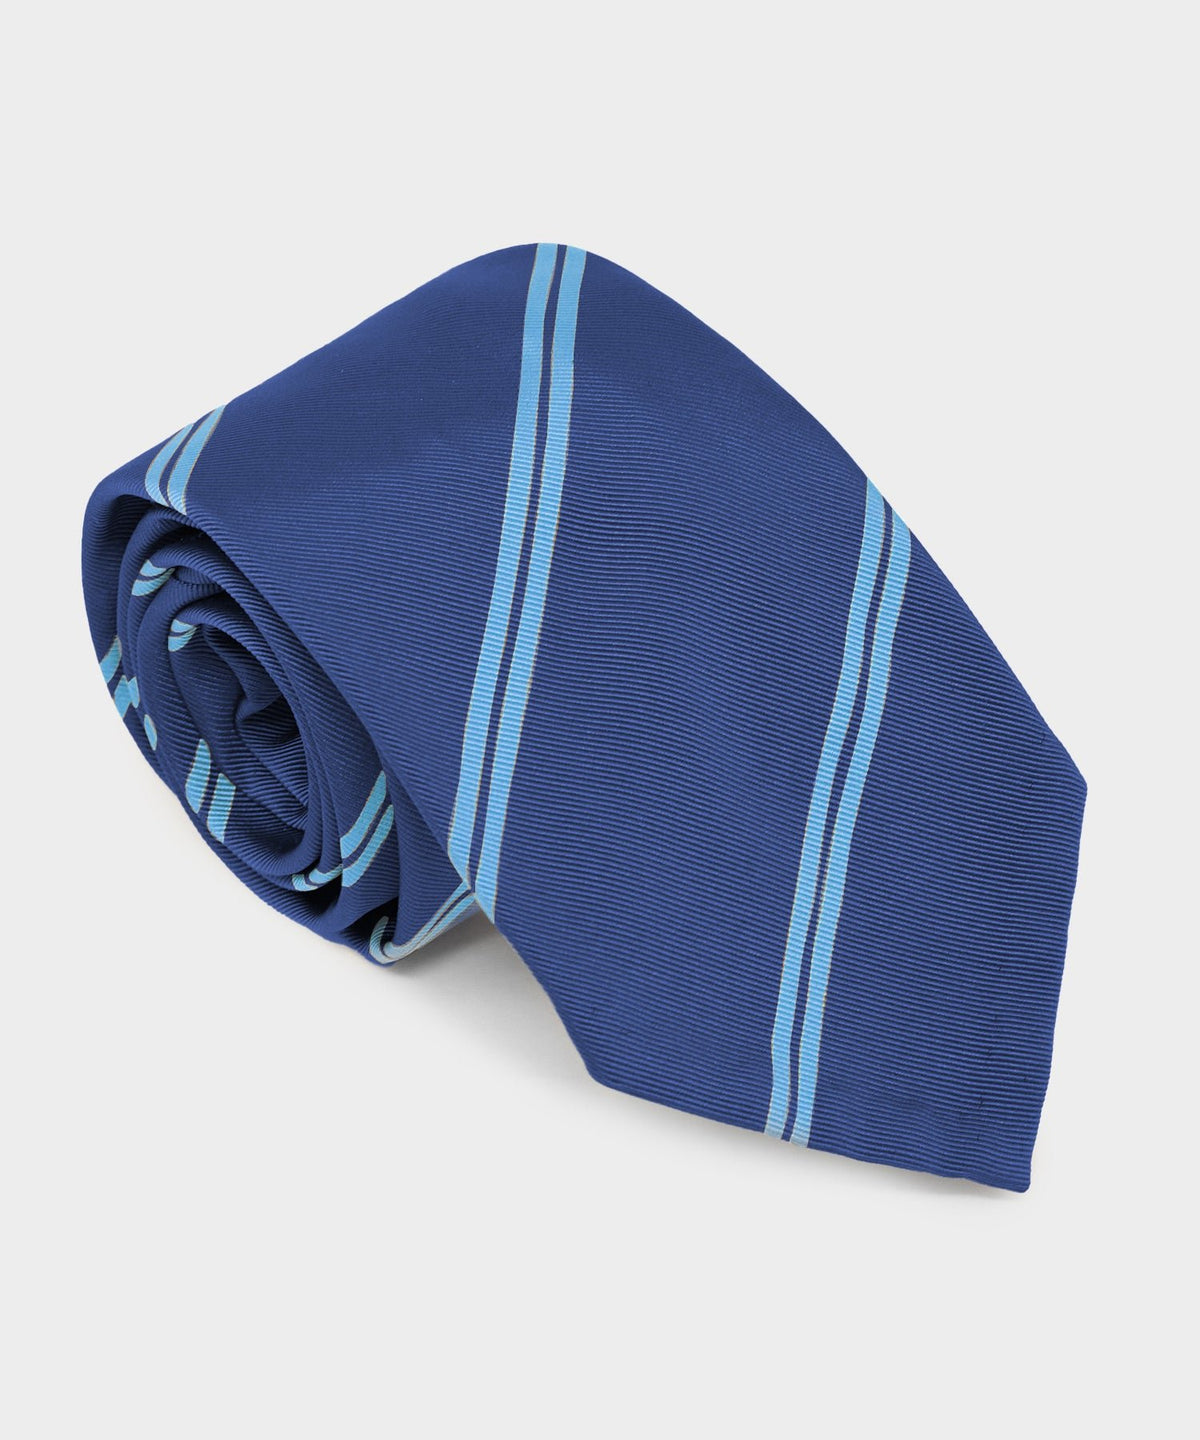 Italian Silk Tie in Navy Double Stripe